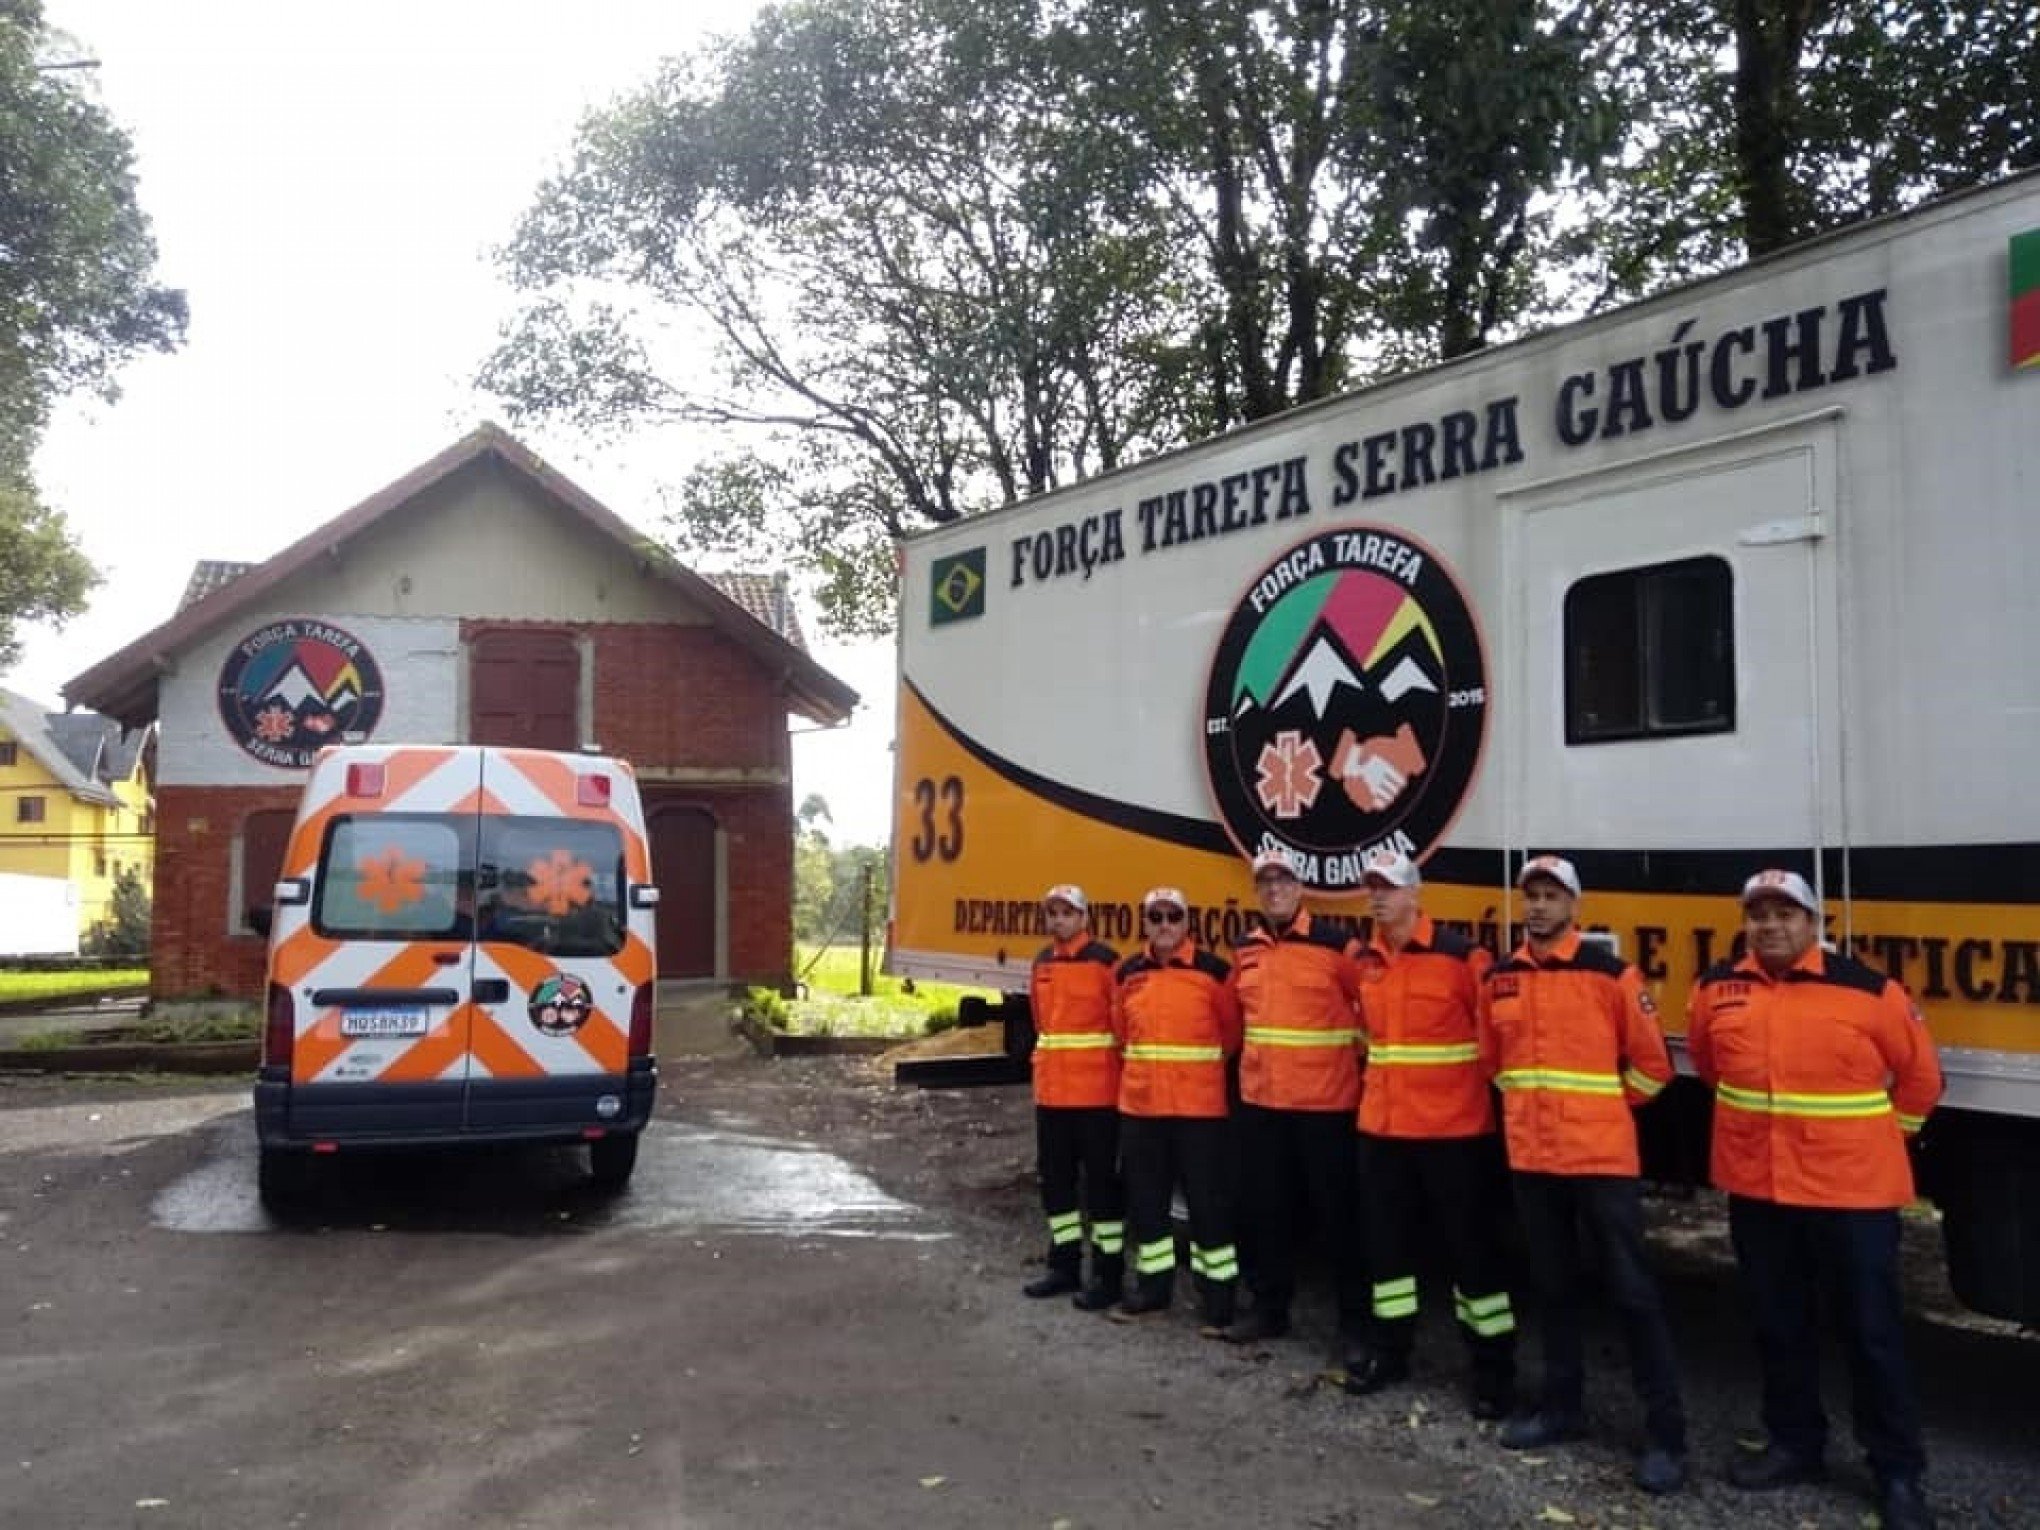 Por falta de voluntários e recursos, Força Tarefa Serra Gaúcha encerra as atividades